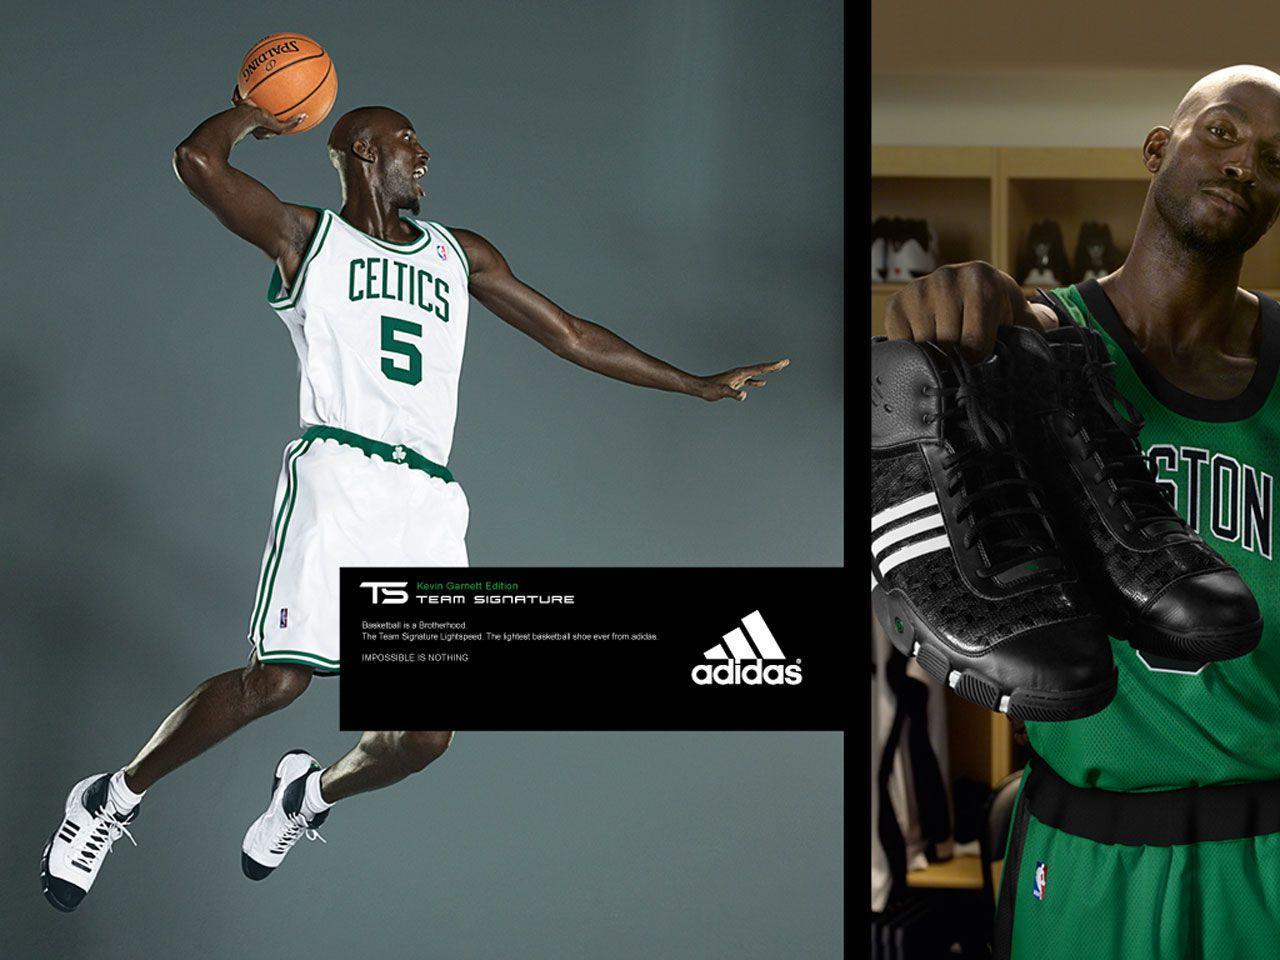 Kevin Garnett Adidas Dunk Wallpaper. Basketball Wallpaper at